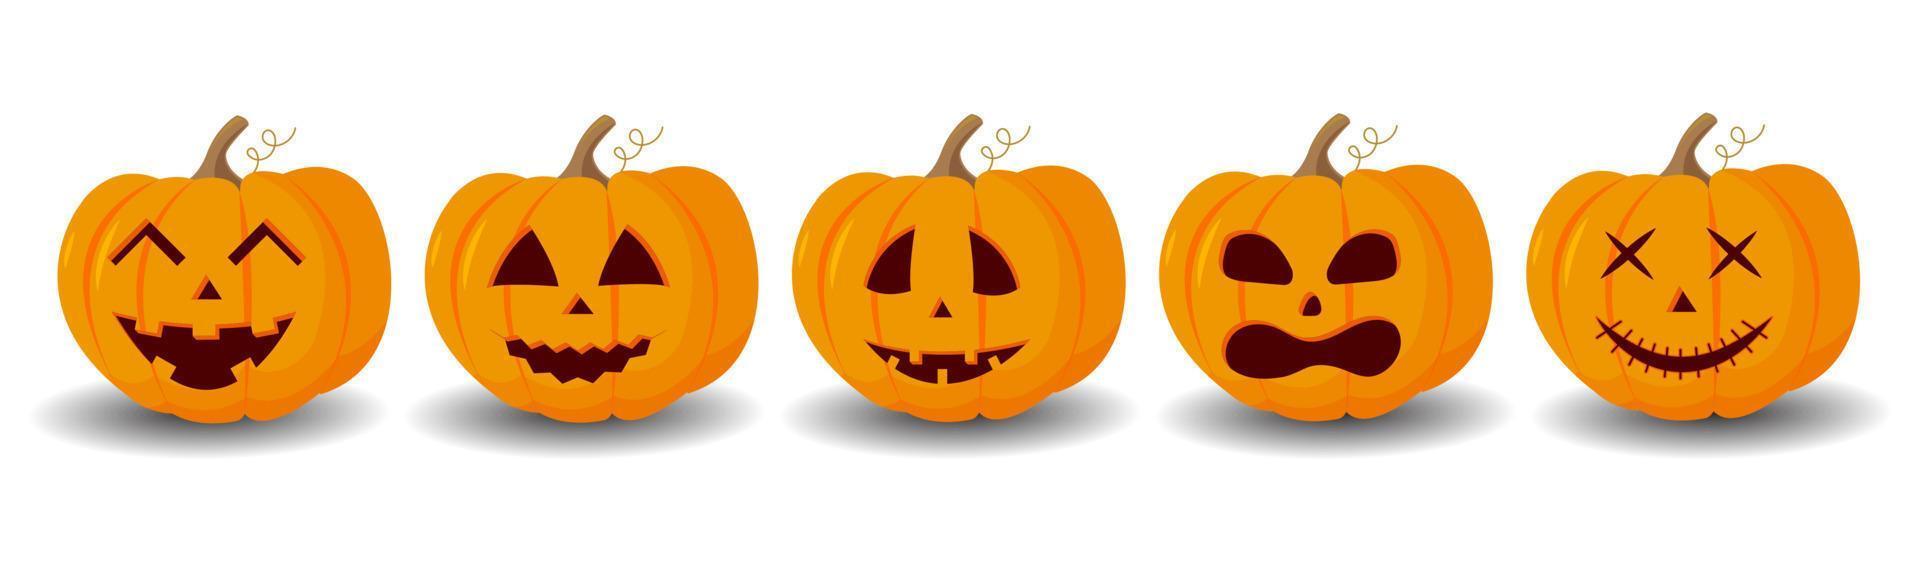 reeks pompoen Aan een wit achtergrond. oranje pompoen met een glimlach voor uw halloween ontwerp. vector illustratie.